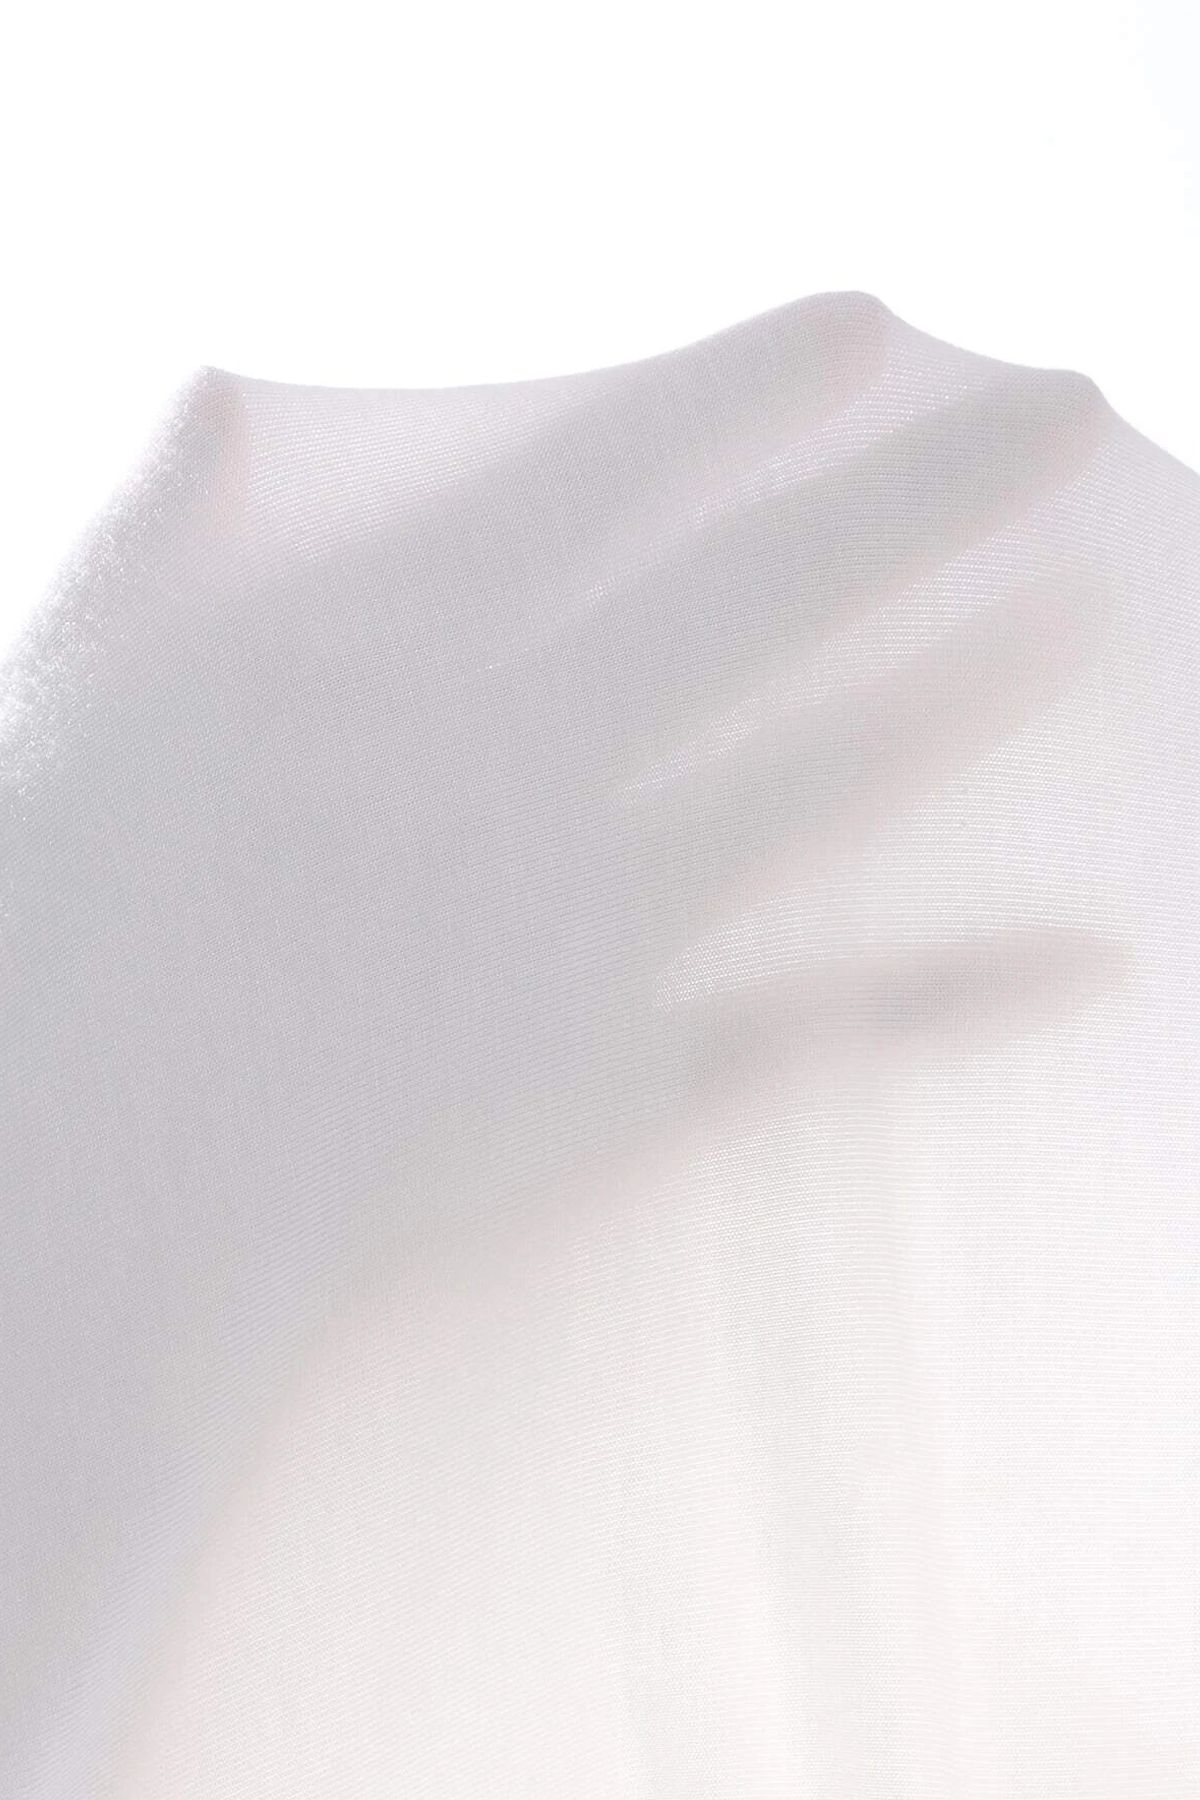 Kadın Beyaz Tek Omuz Cut Out Detaylı Crop Top Bluz